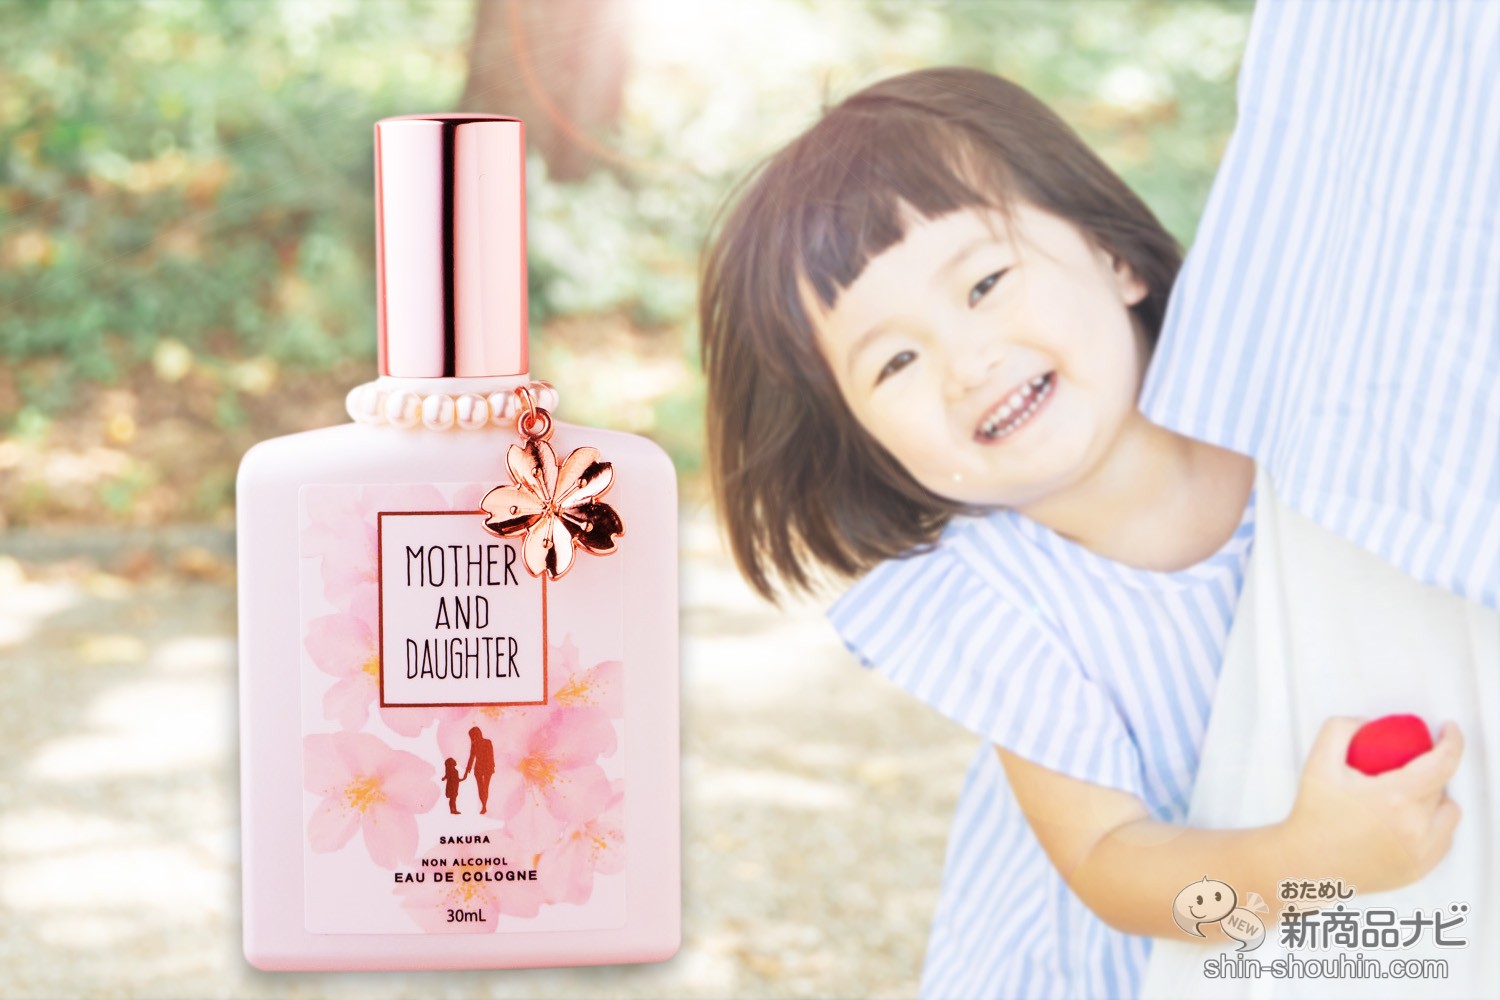 おためし新商品ナビ » Blog Archive » 【数量限定】優しい桜の香りで 